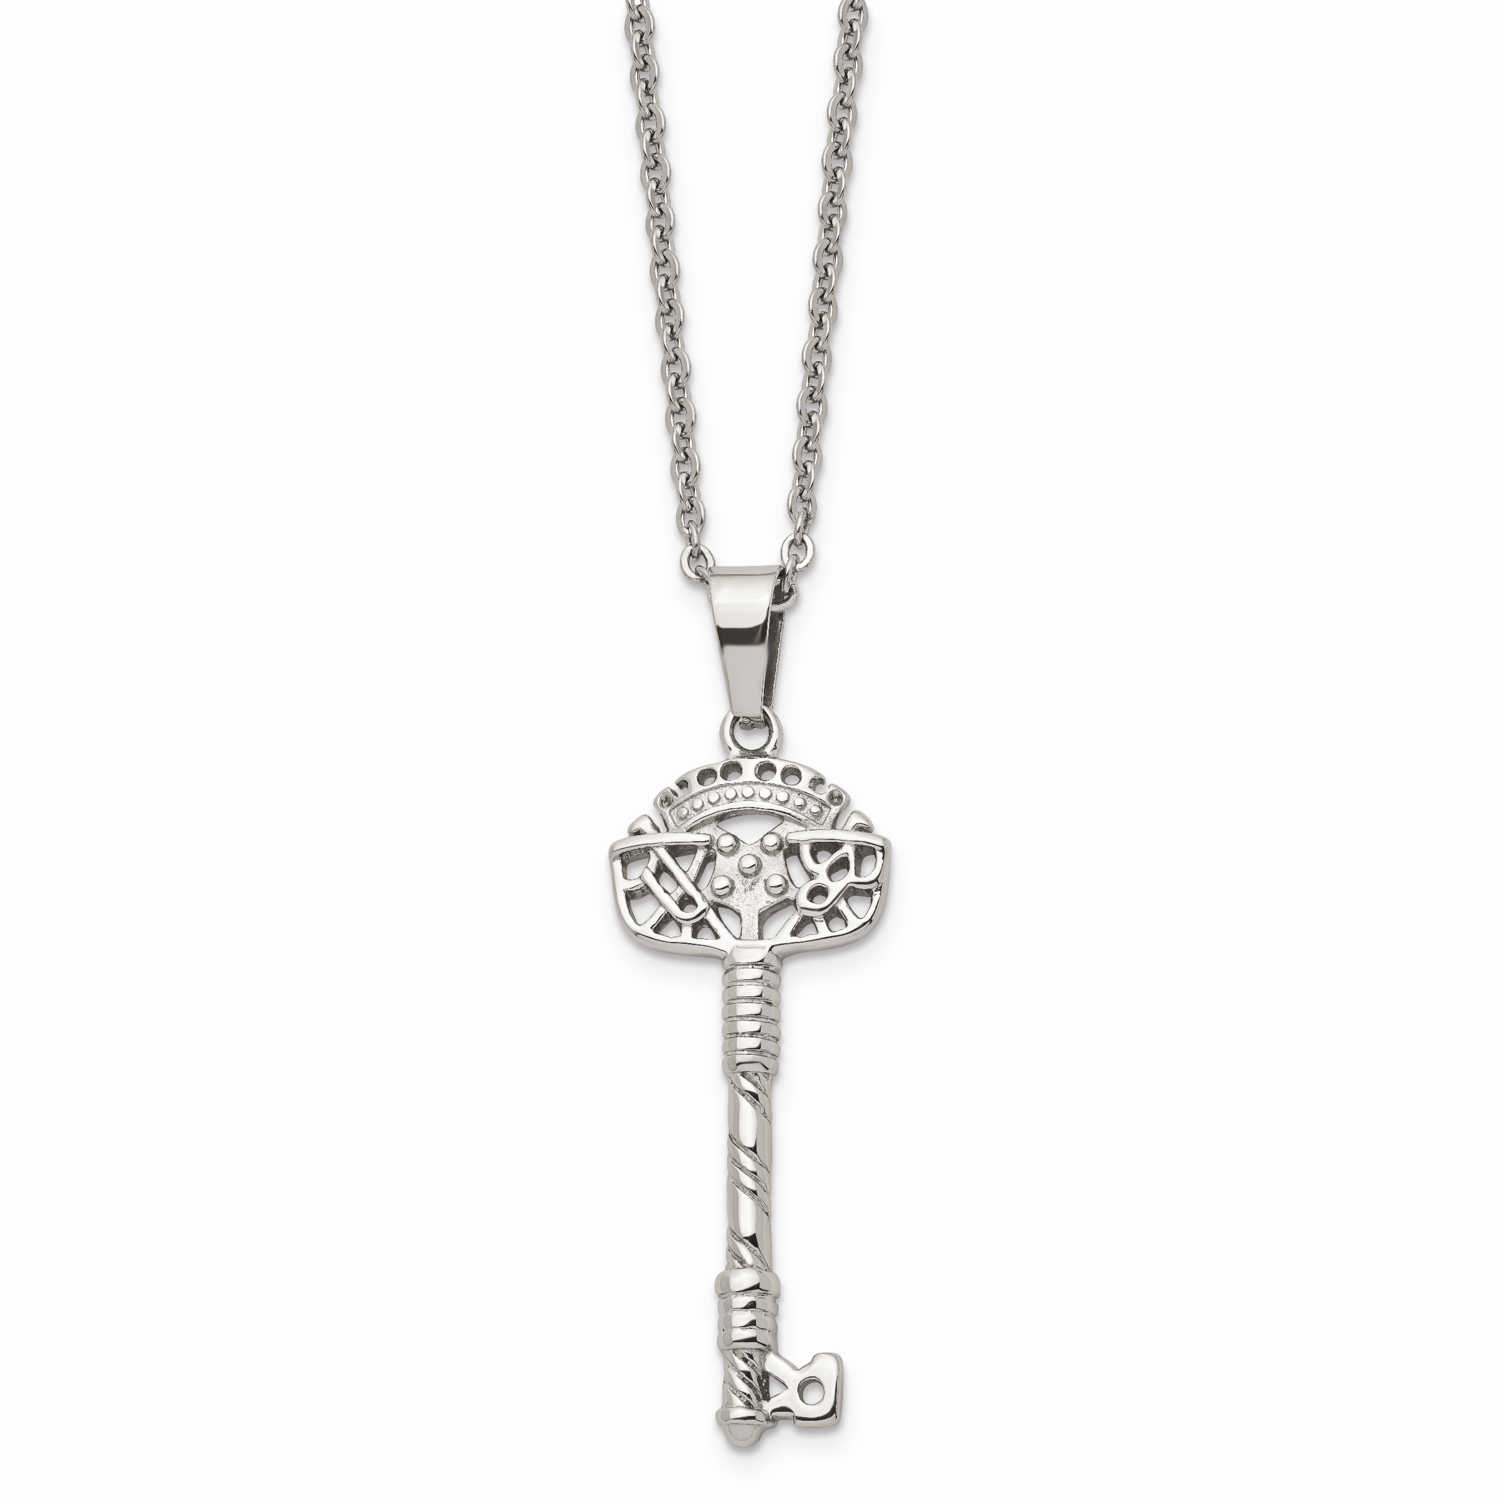 Fancy Key Pendant Necklace Stainless Steel SRN616-22